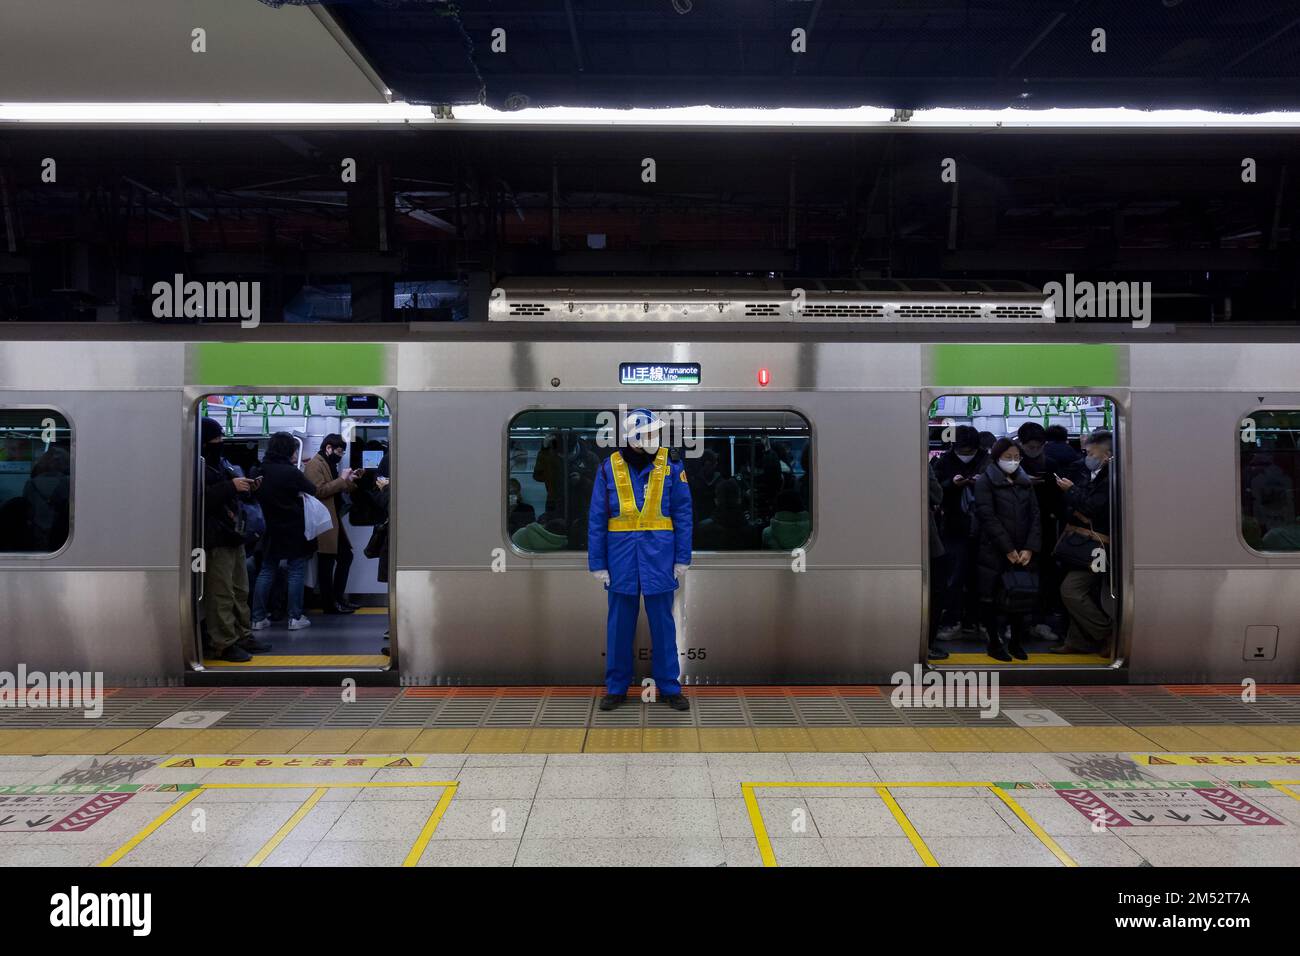 Un vecchio uomo giapponese che lavora come guardia di sicurezza sulla piattaforma della Stazione di Shibuya di fronte ad un treno della linea JR Yamanote, Tokyo, Giappone. Foto Stock